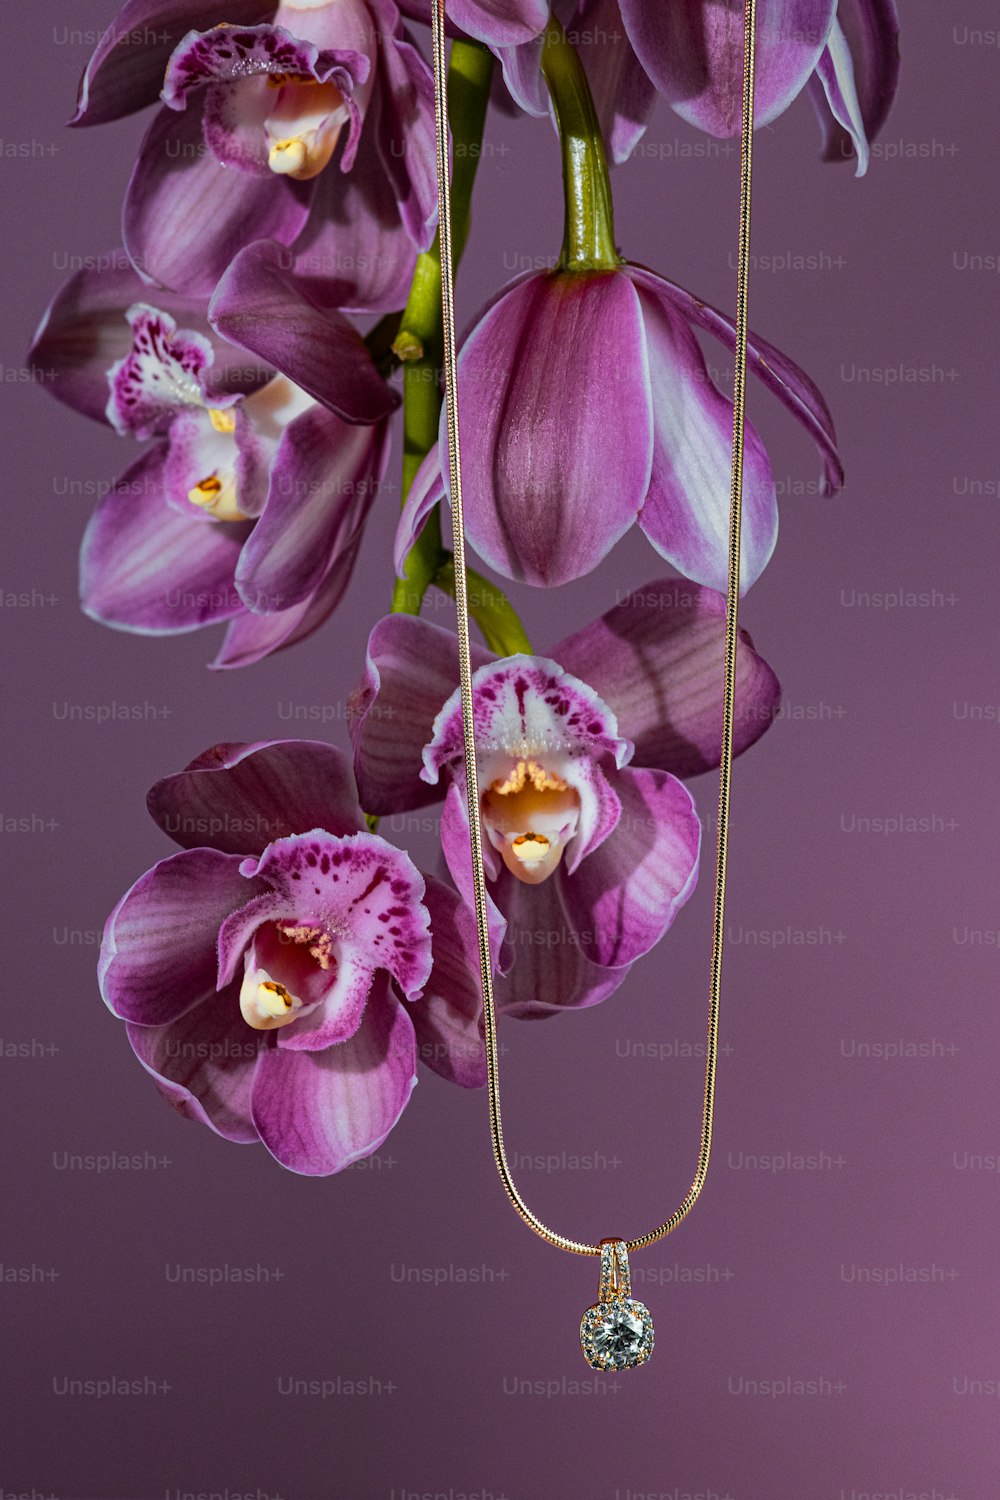 Un ramo de flores púrpuras colgando de una cadena de oro